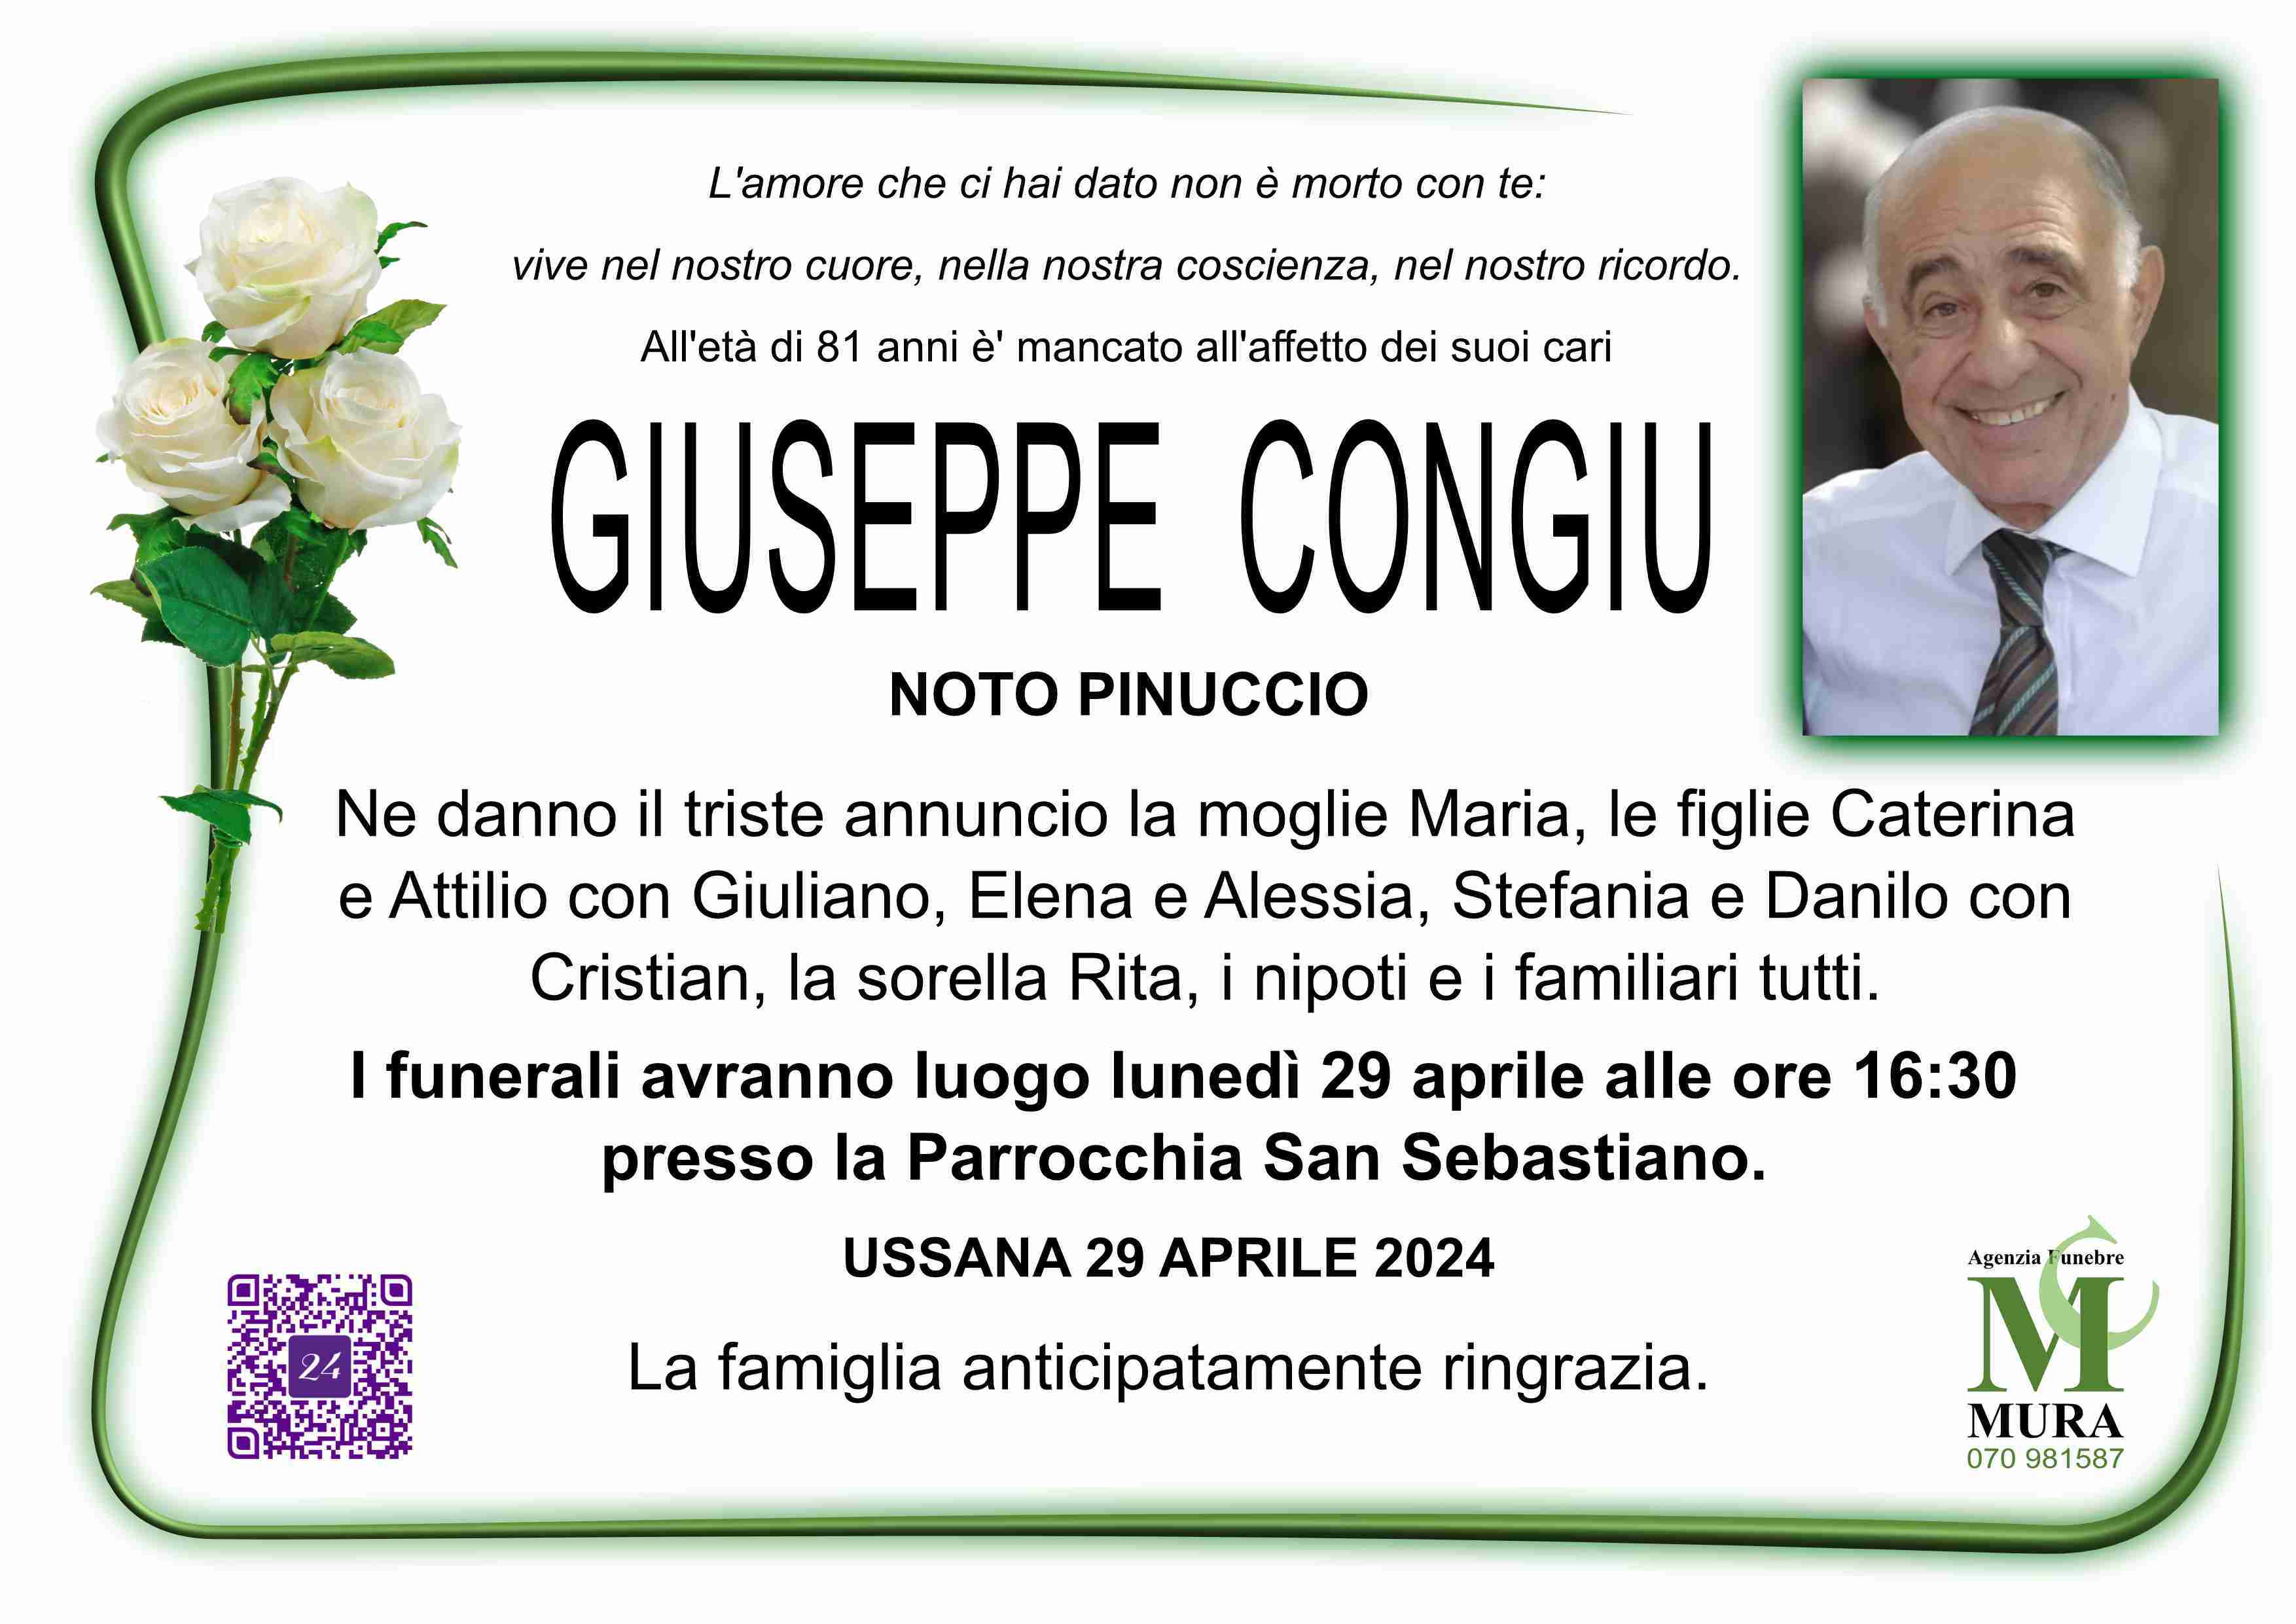 Giuseppe Congiu